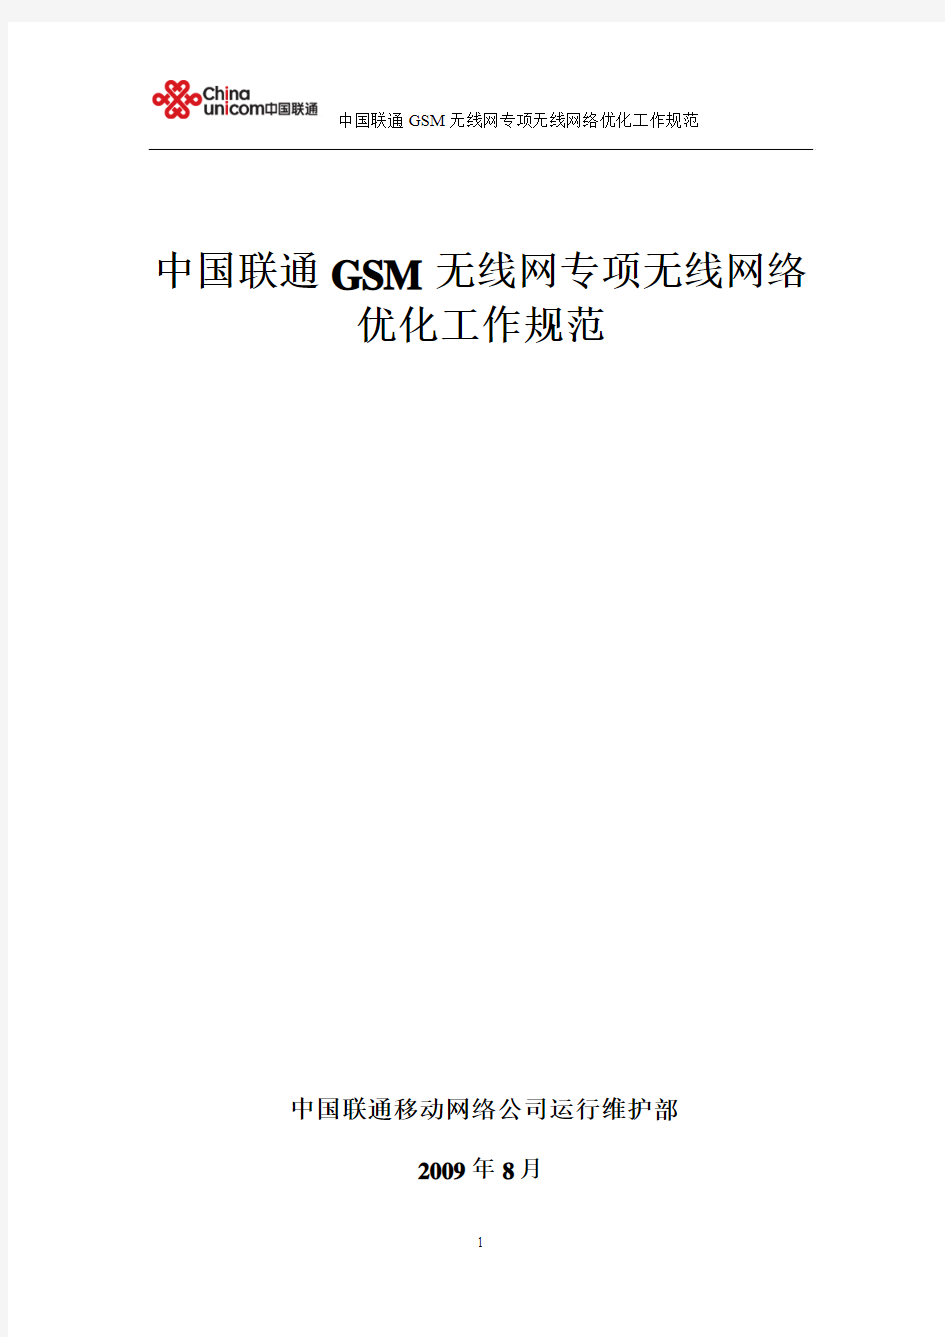 中国联通GSM无线网专项网络优化工作规范(北京修订)v1